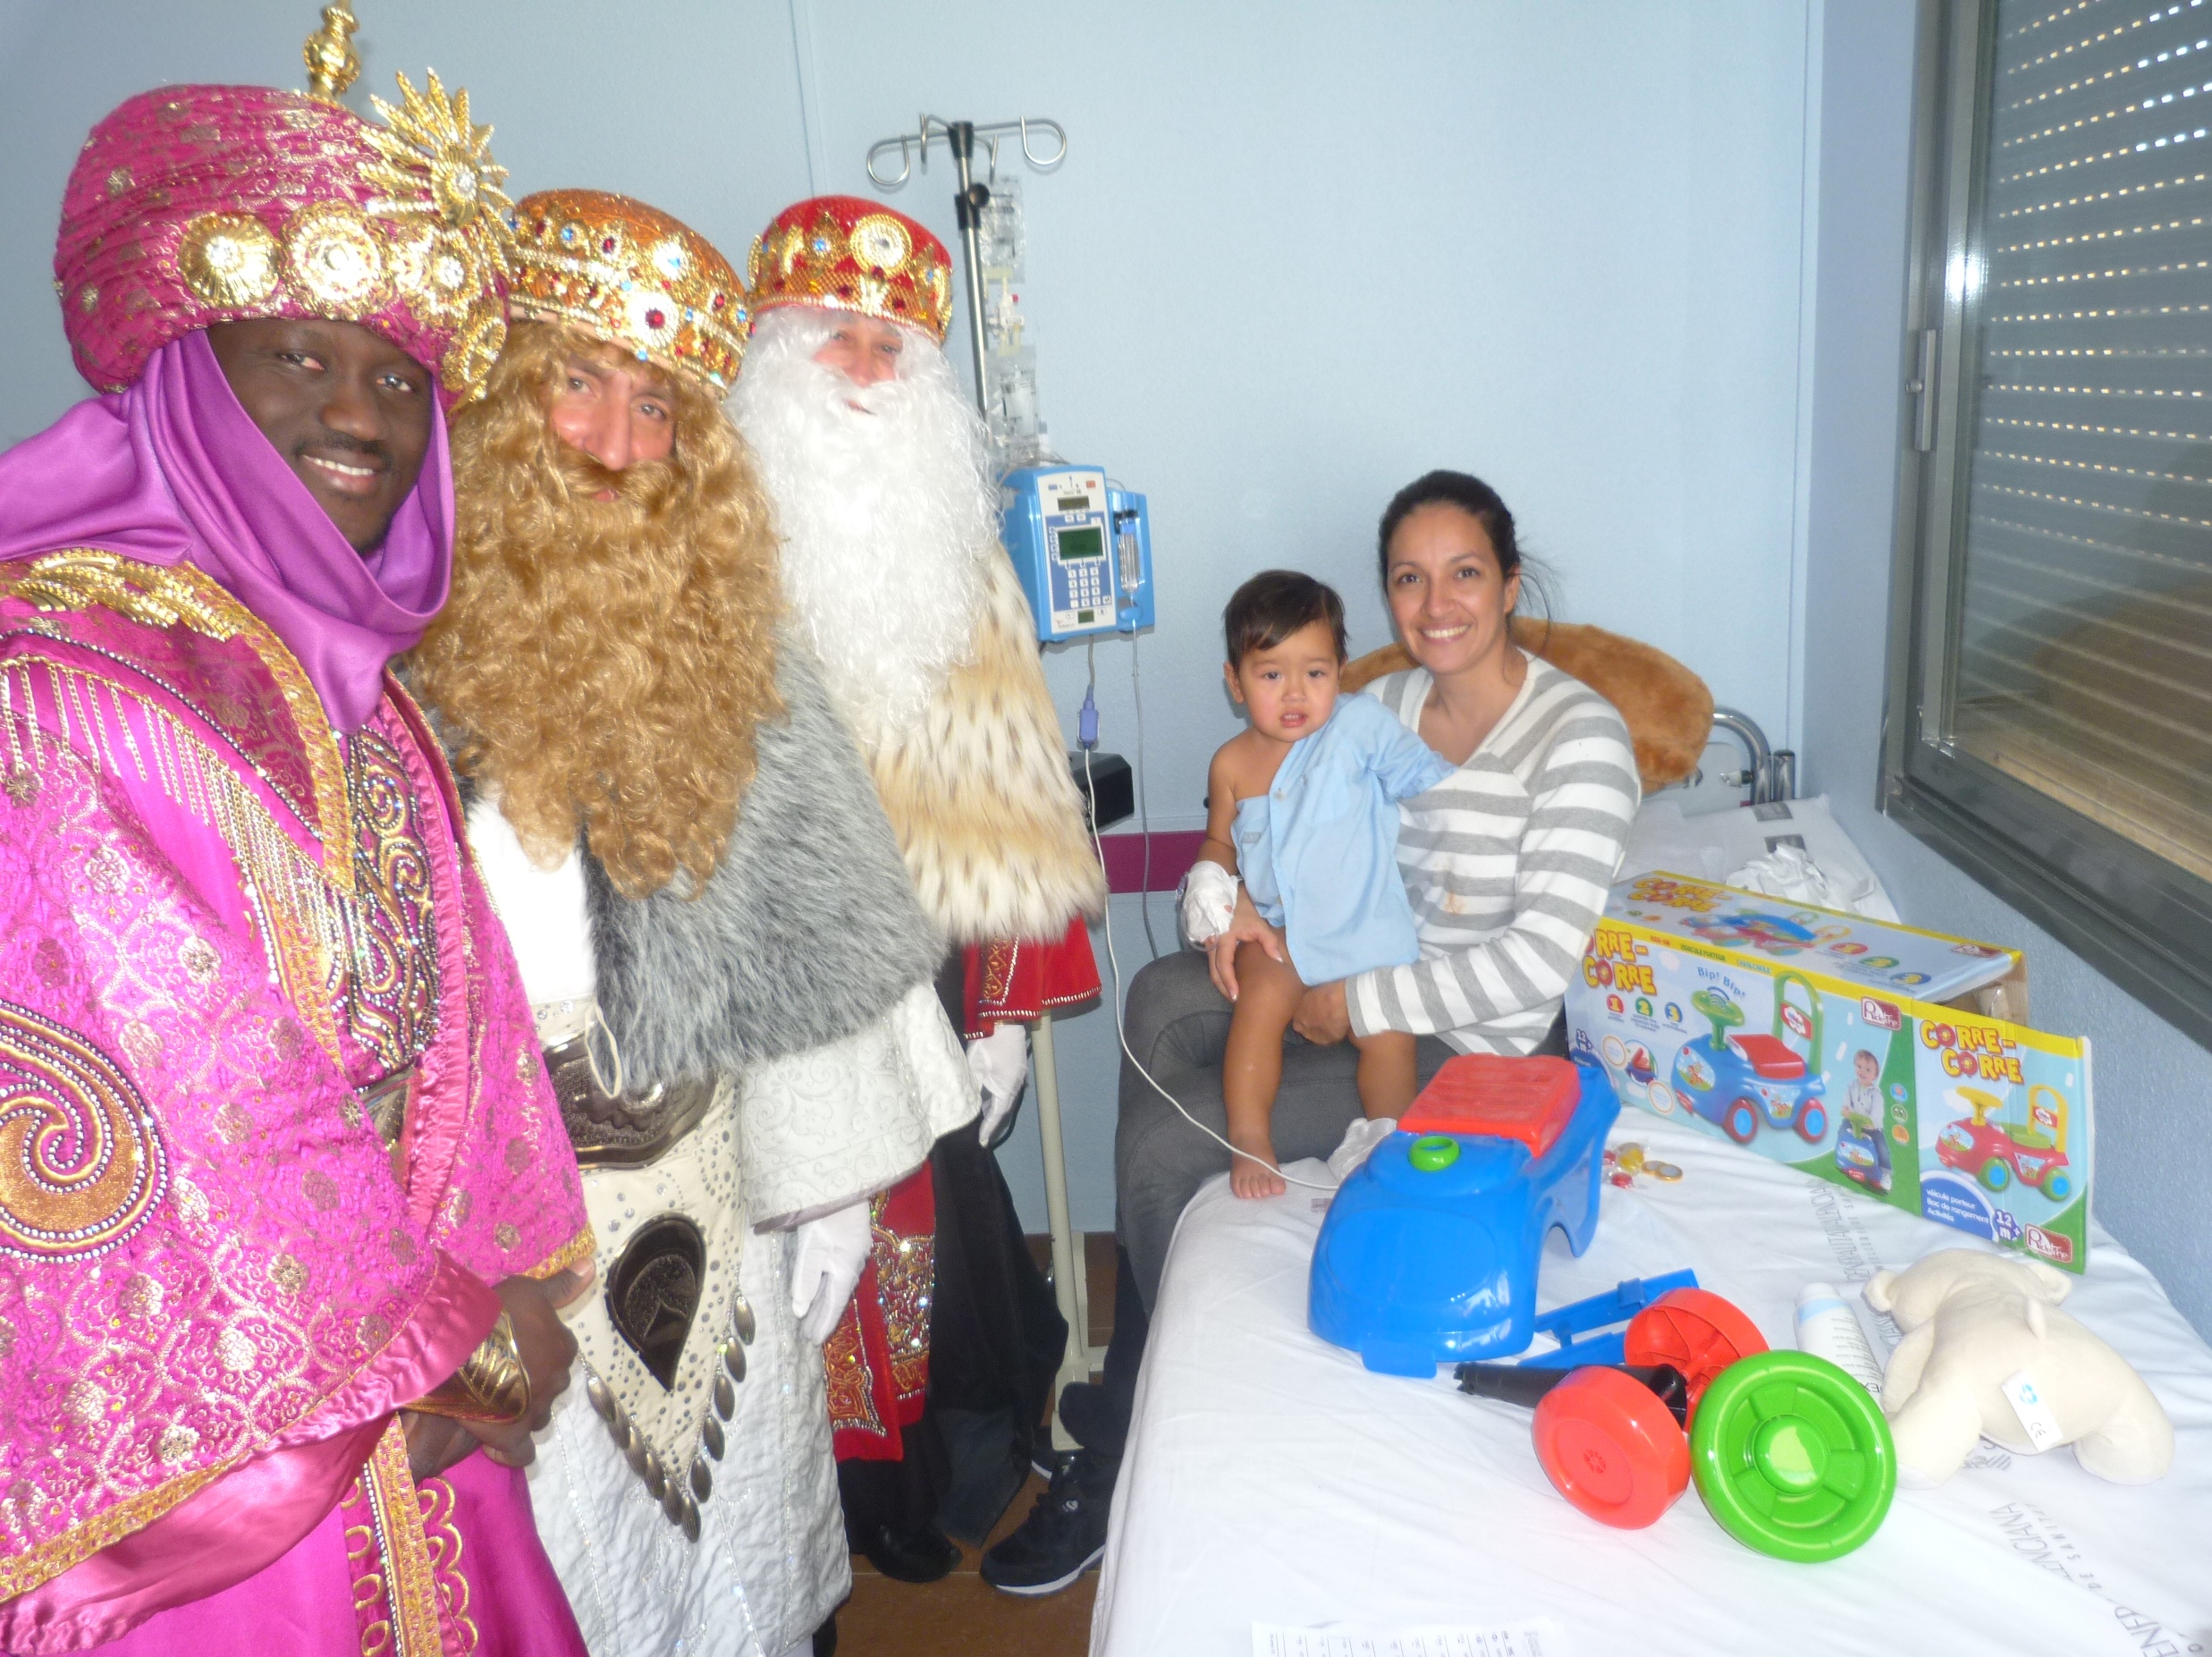 Chillido Sin alterar por favor no lo hagas Los Reyes Magos traen la ilusión a los niños y niñas ingresados en el  Hospital de Sant Joan | Departamento de Salud Alicante - Sant Joan D'Alacant